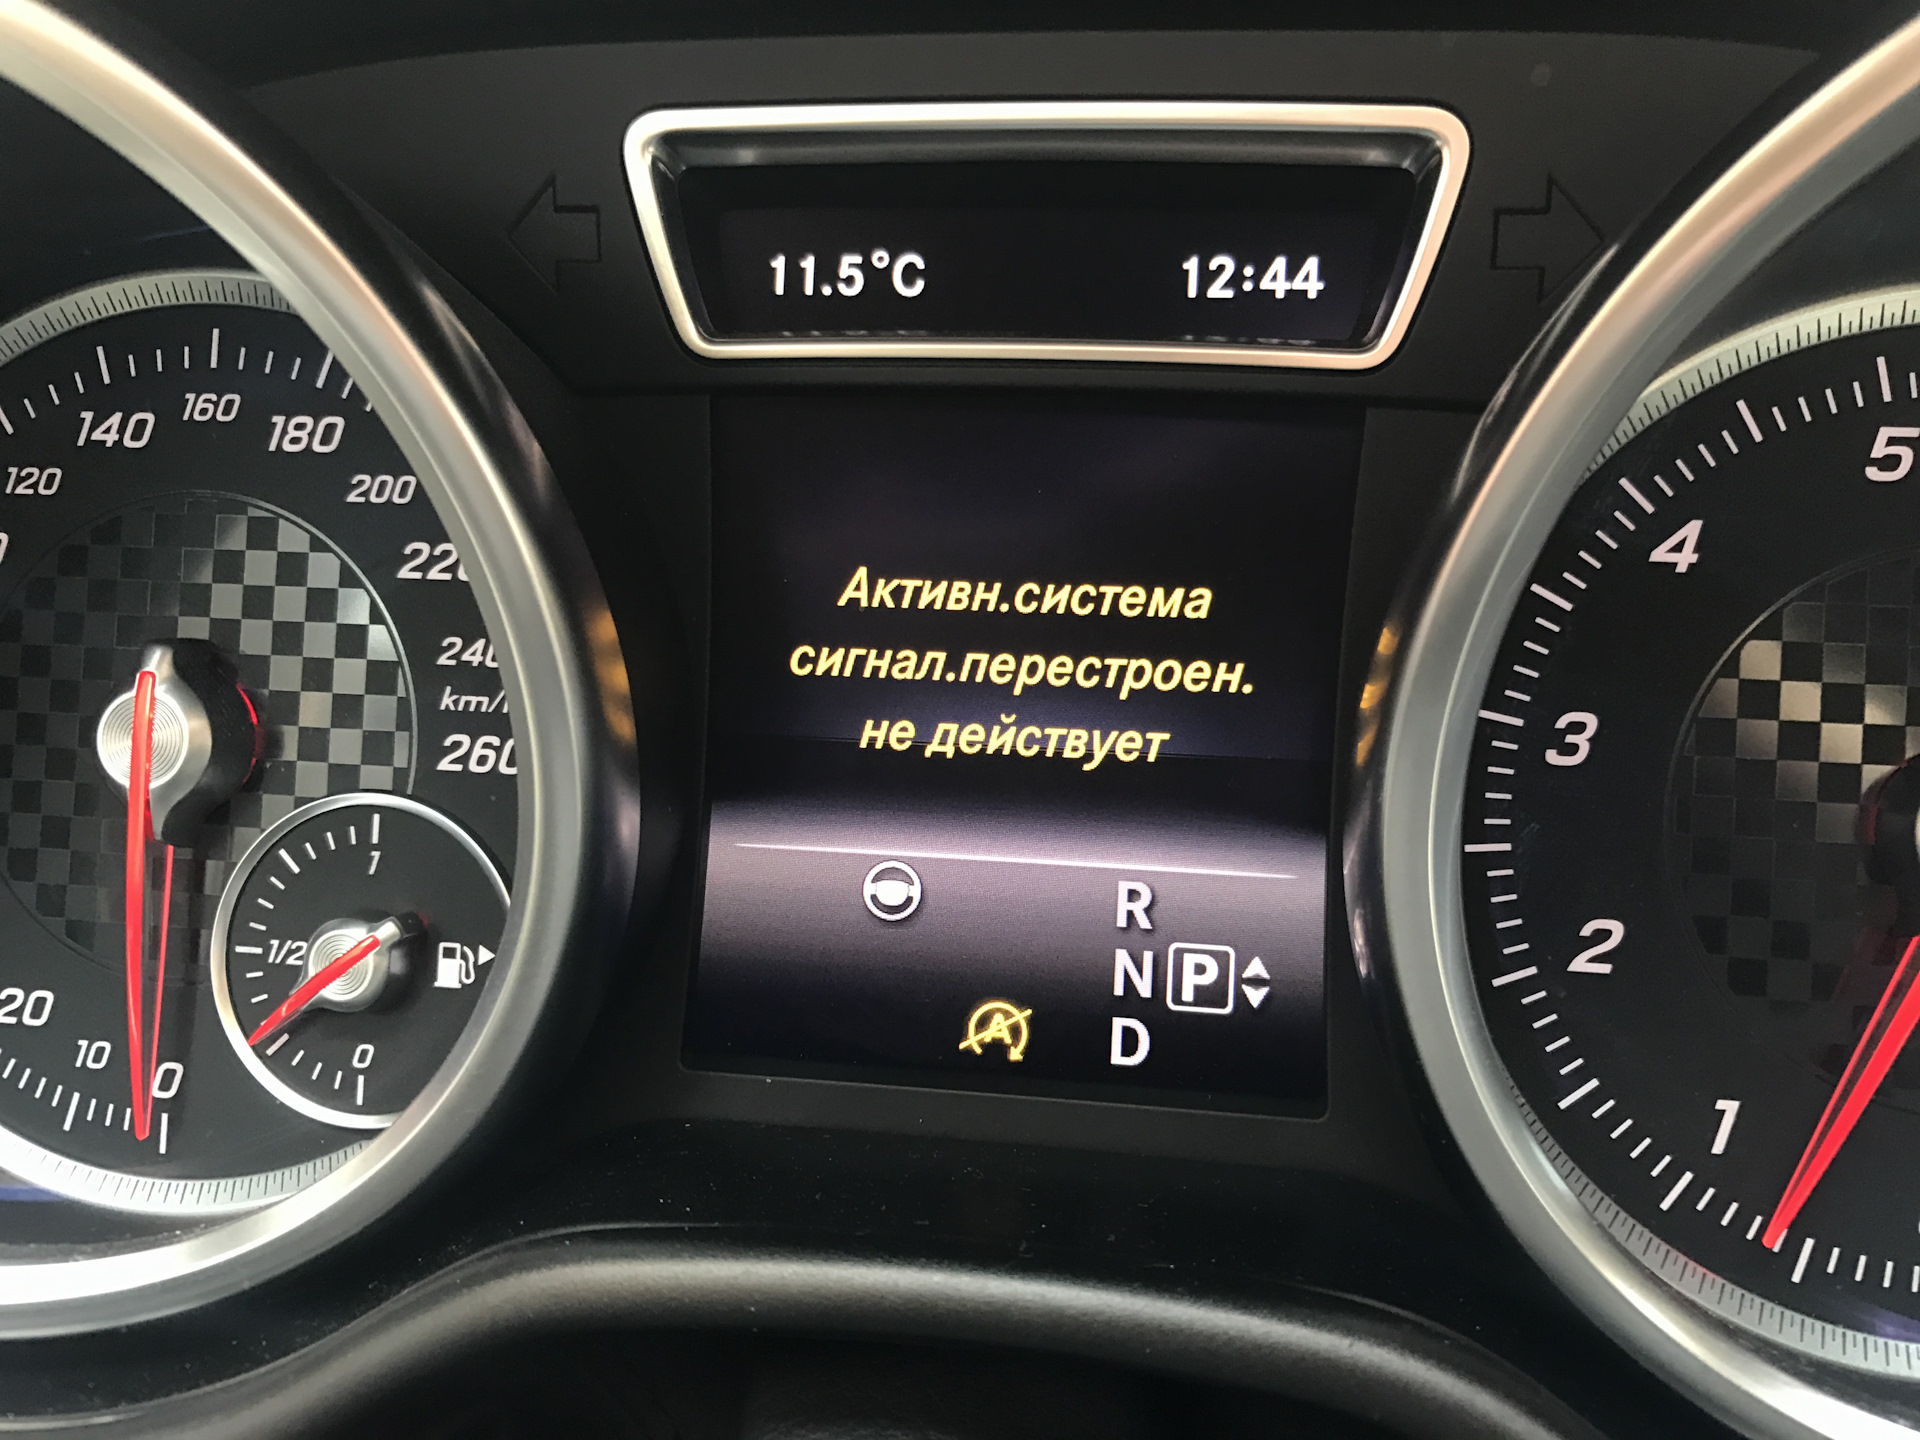 Отключения систем шин. Mercedes Benz GLE 2016 приборная панель. Бортовой компьютер w205. Цифровой дисплей на Мерседес w166. Диагностический прибор Мерседес gl 350 дизель.